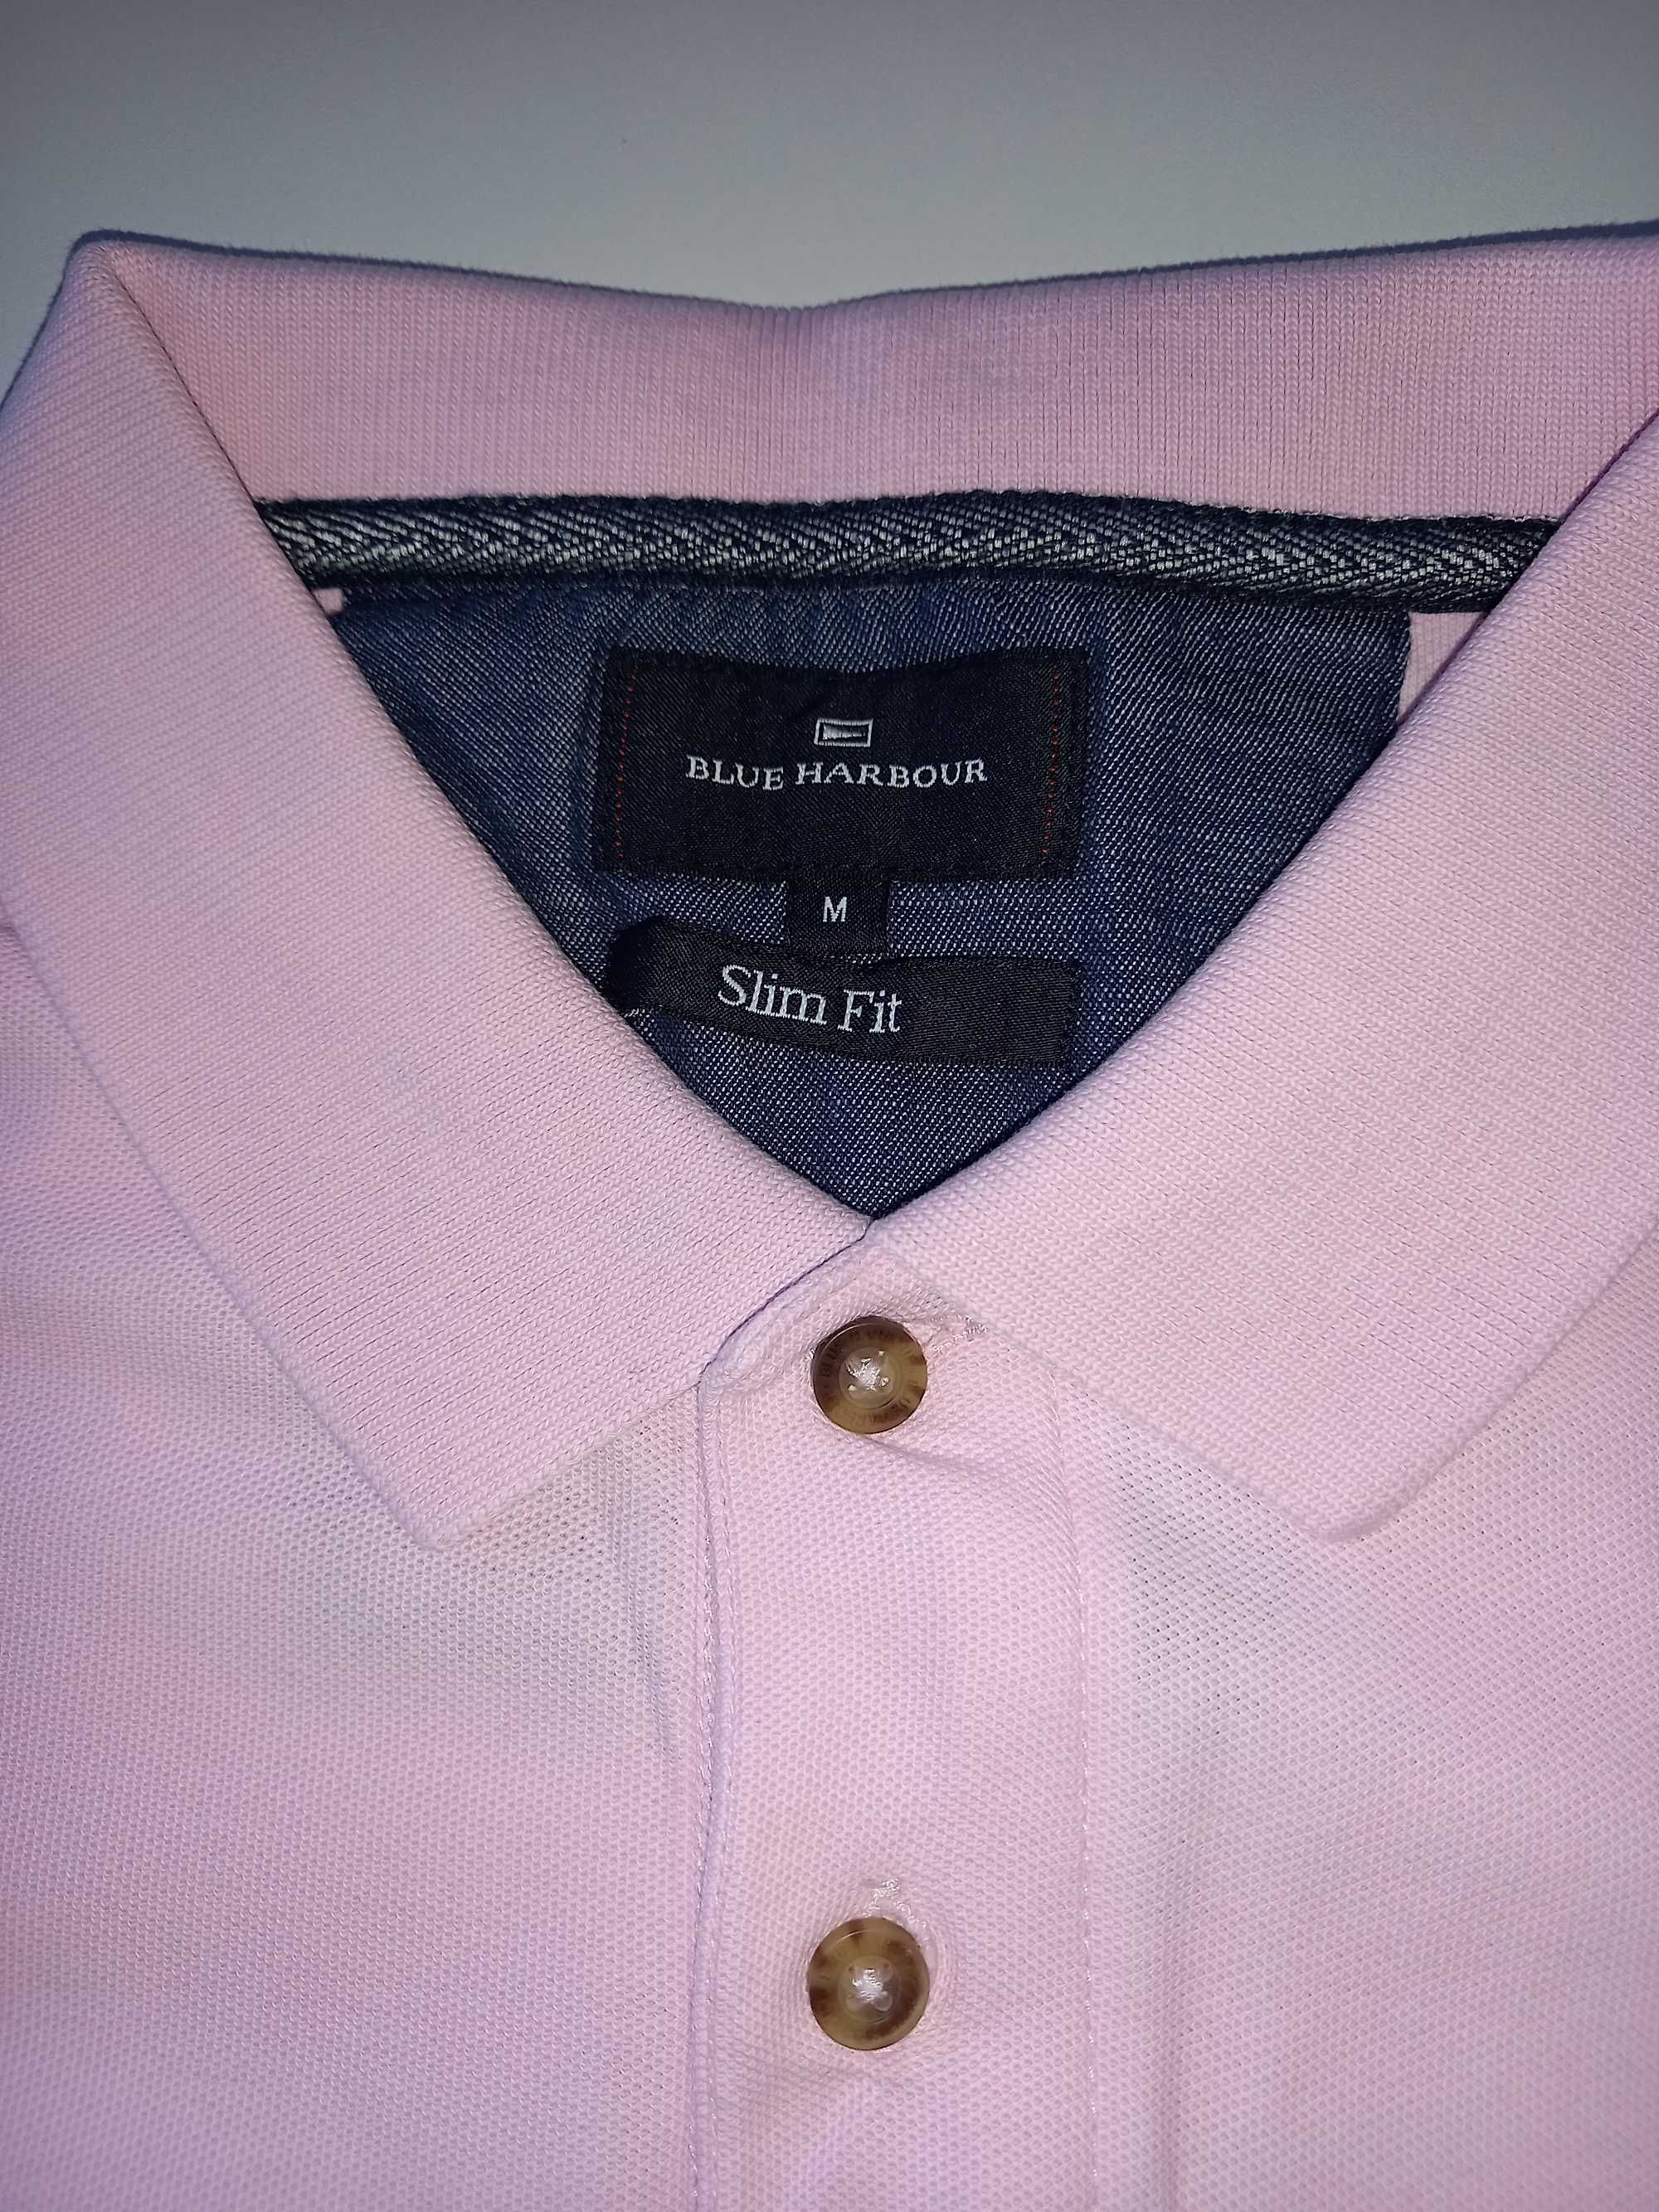 Zestaw 2 koszulek polo marki Mark&Spencer rozm M kolor różowy